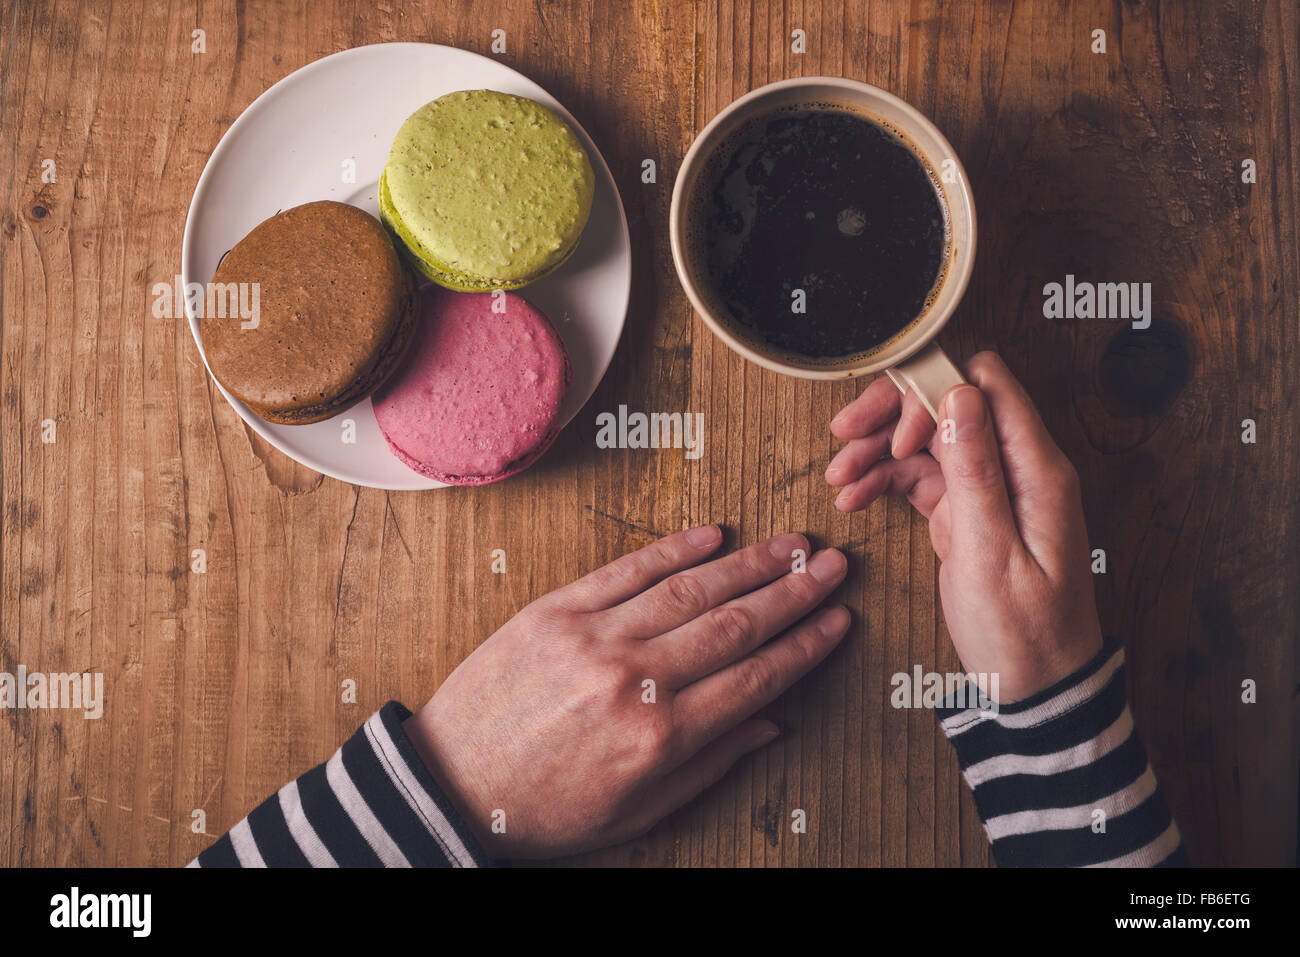 Café et biscuits macaron sur la table le matin, femme hand holding cup avec boisson chaude, vue d'en haut, aux couleurs rétro Banque D'Images